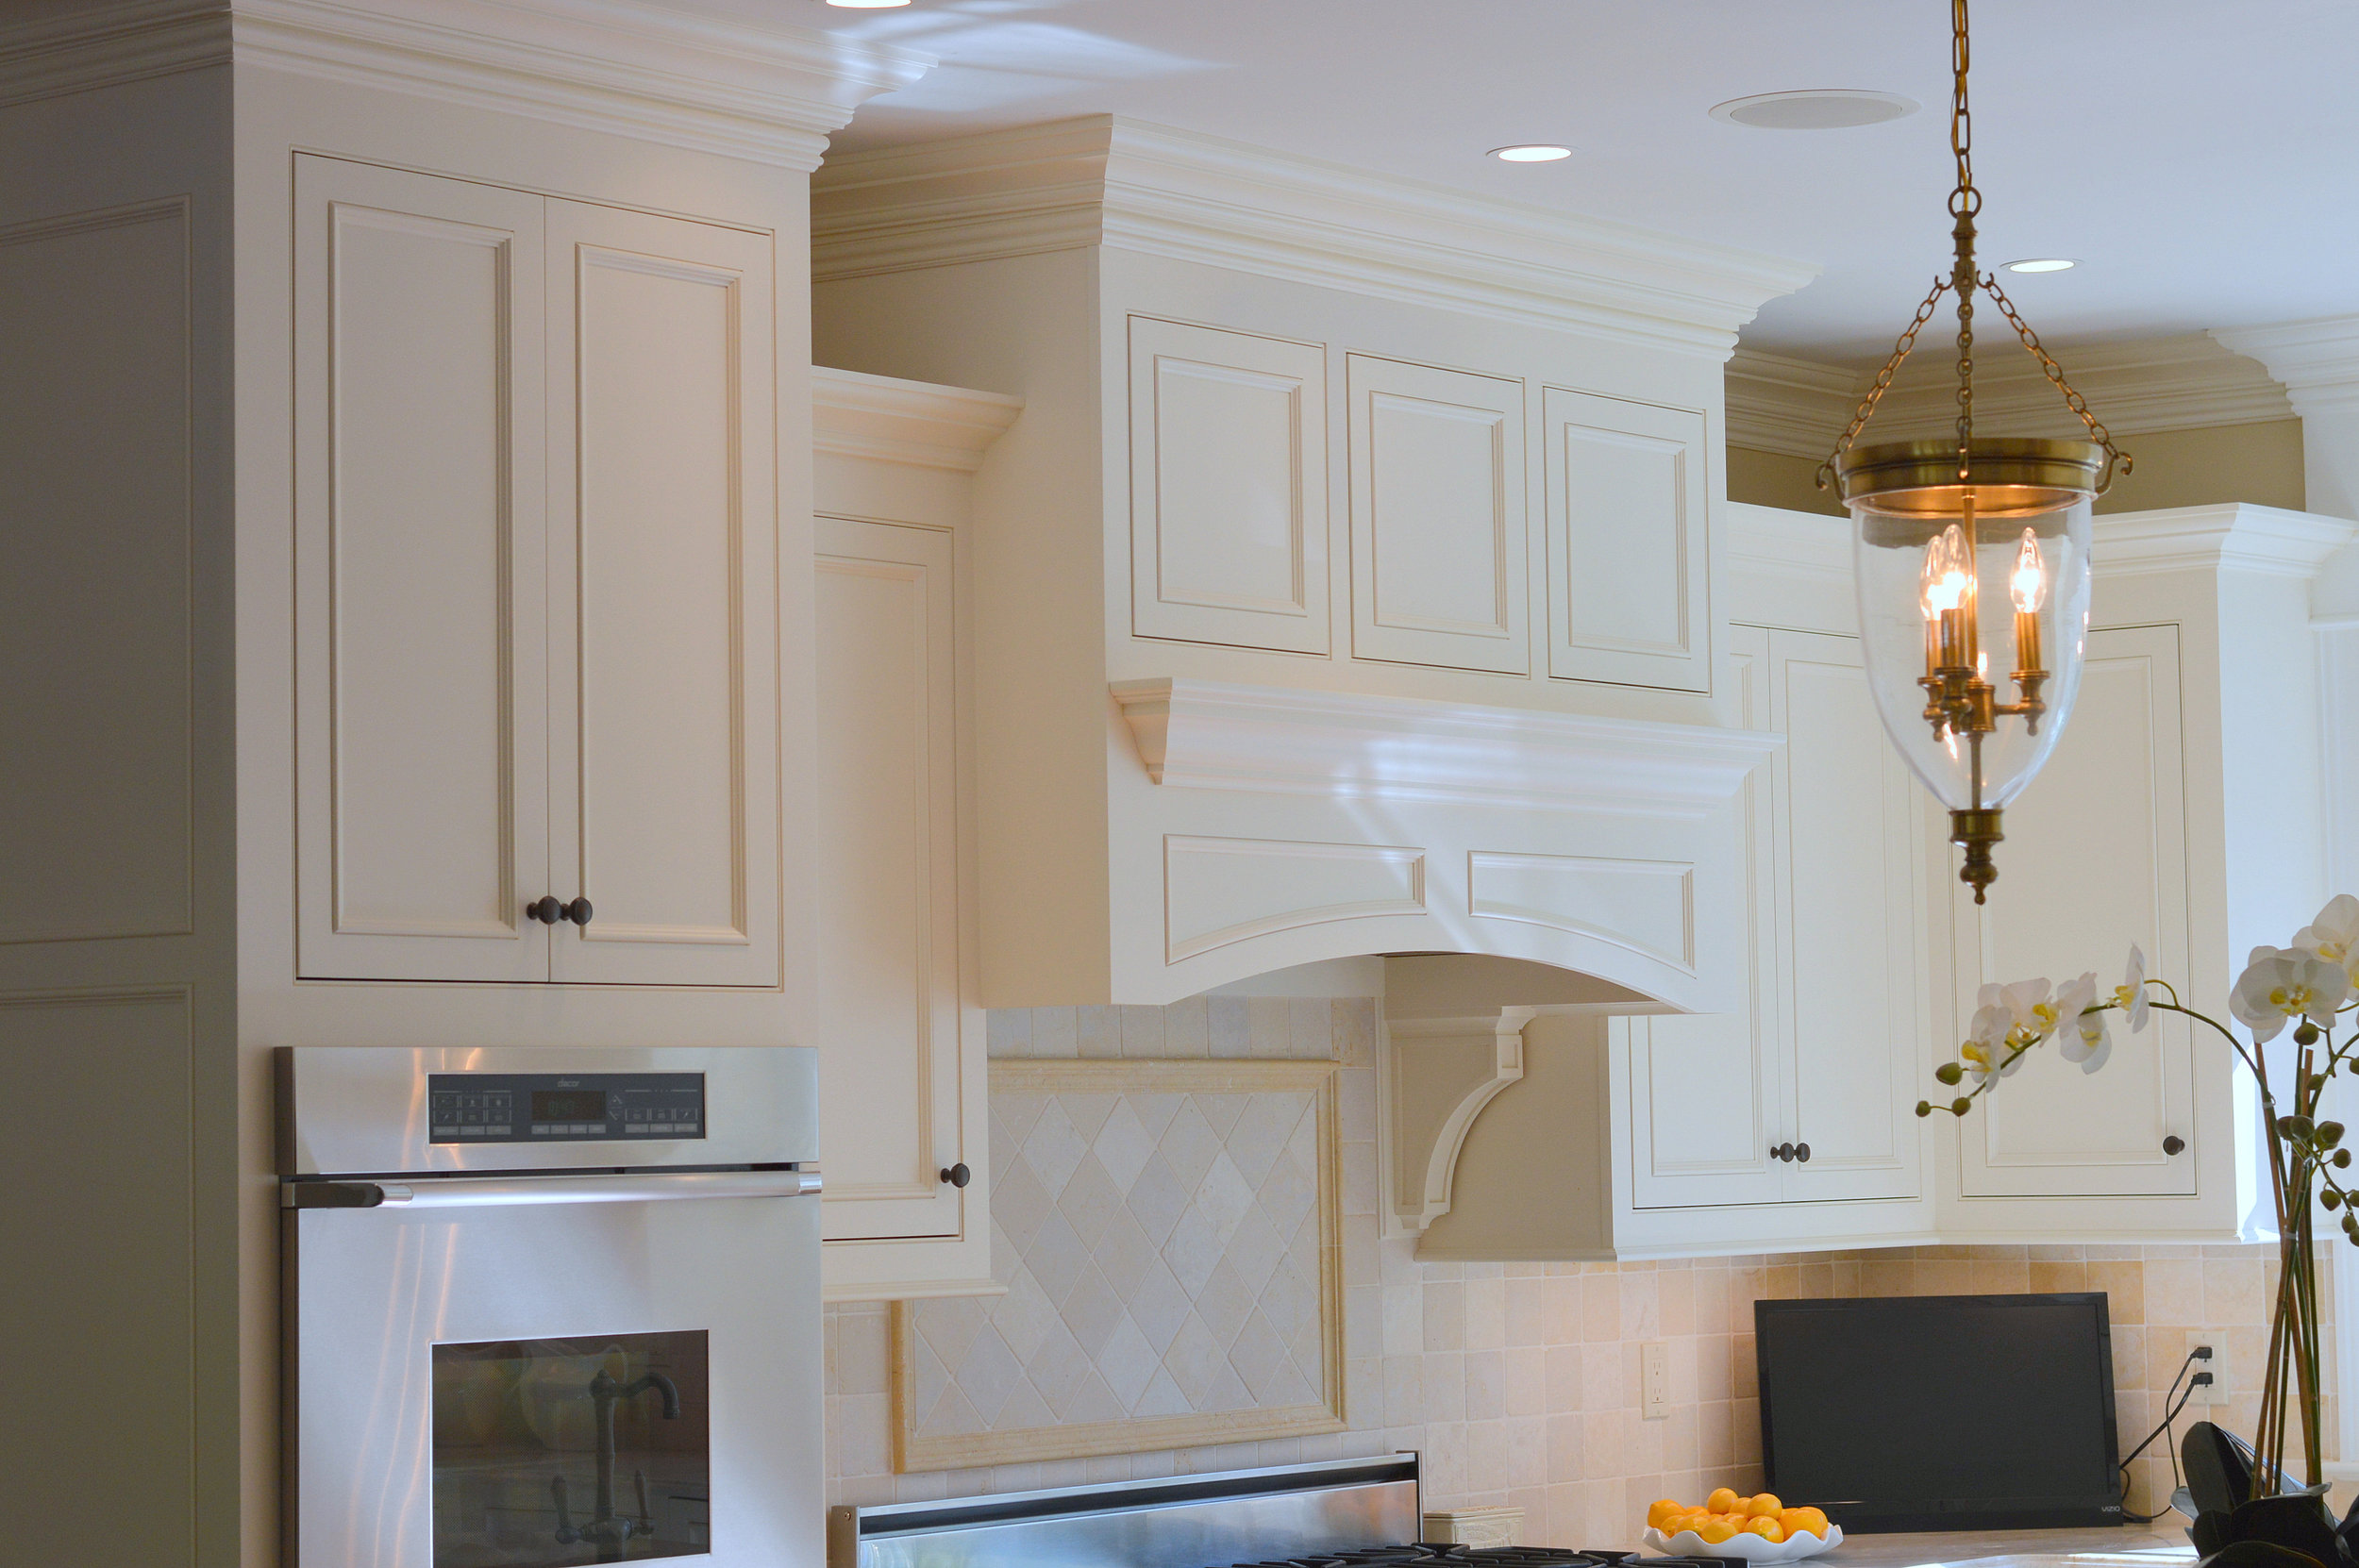 kitchen remodeling — Blog | Custom Cabinet Remodeling ...